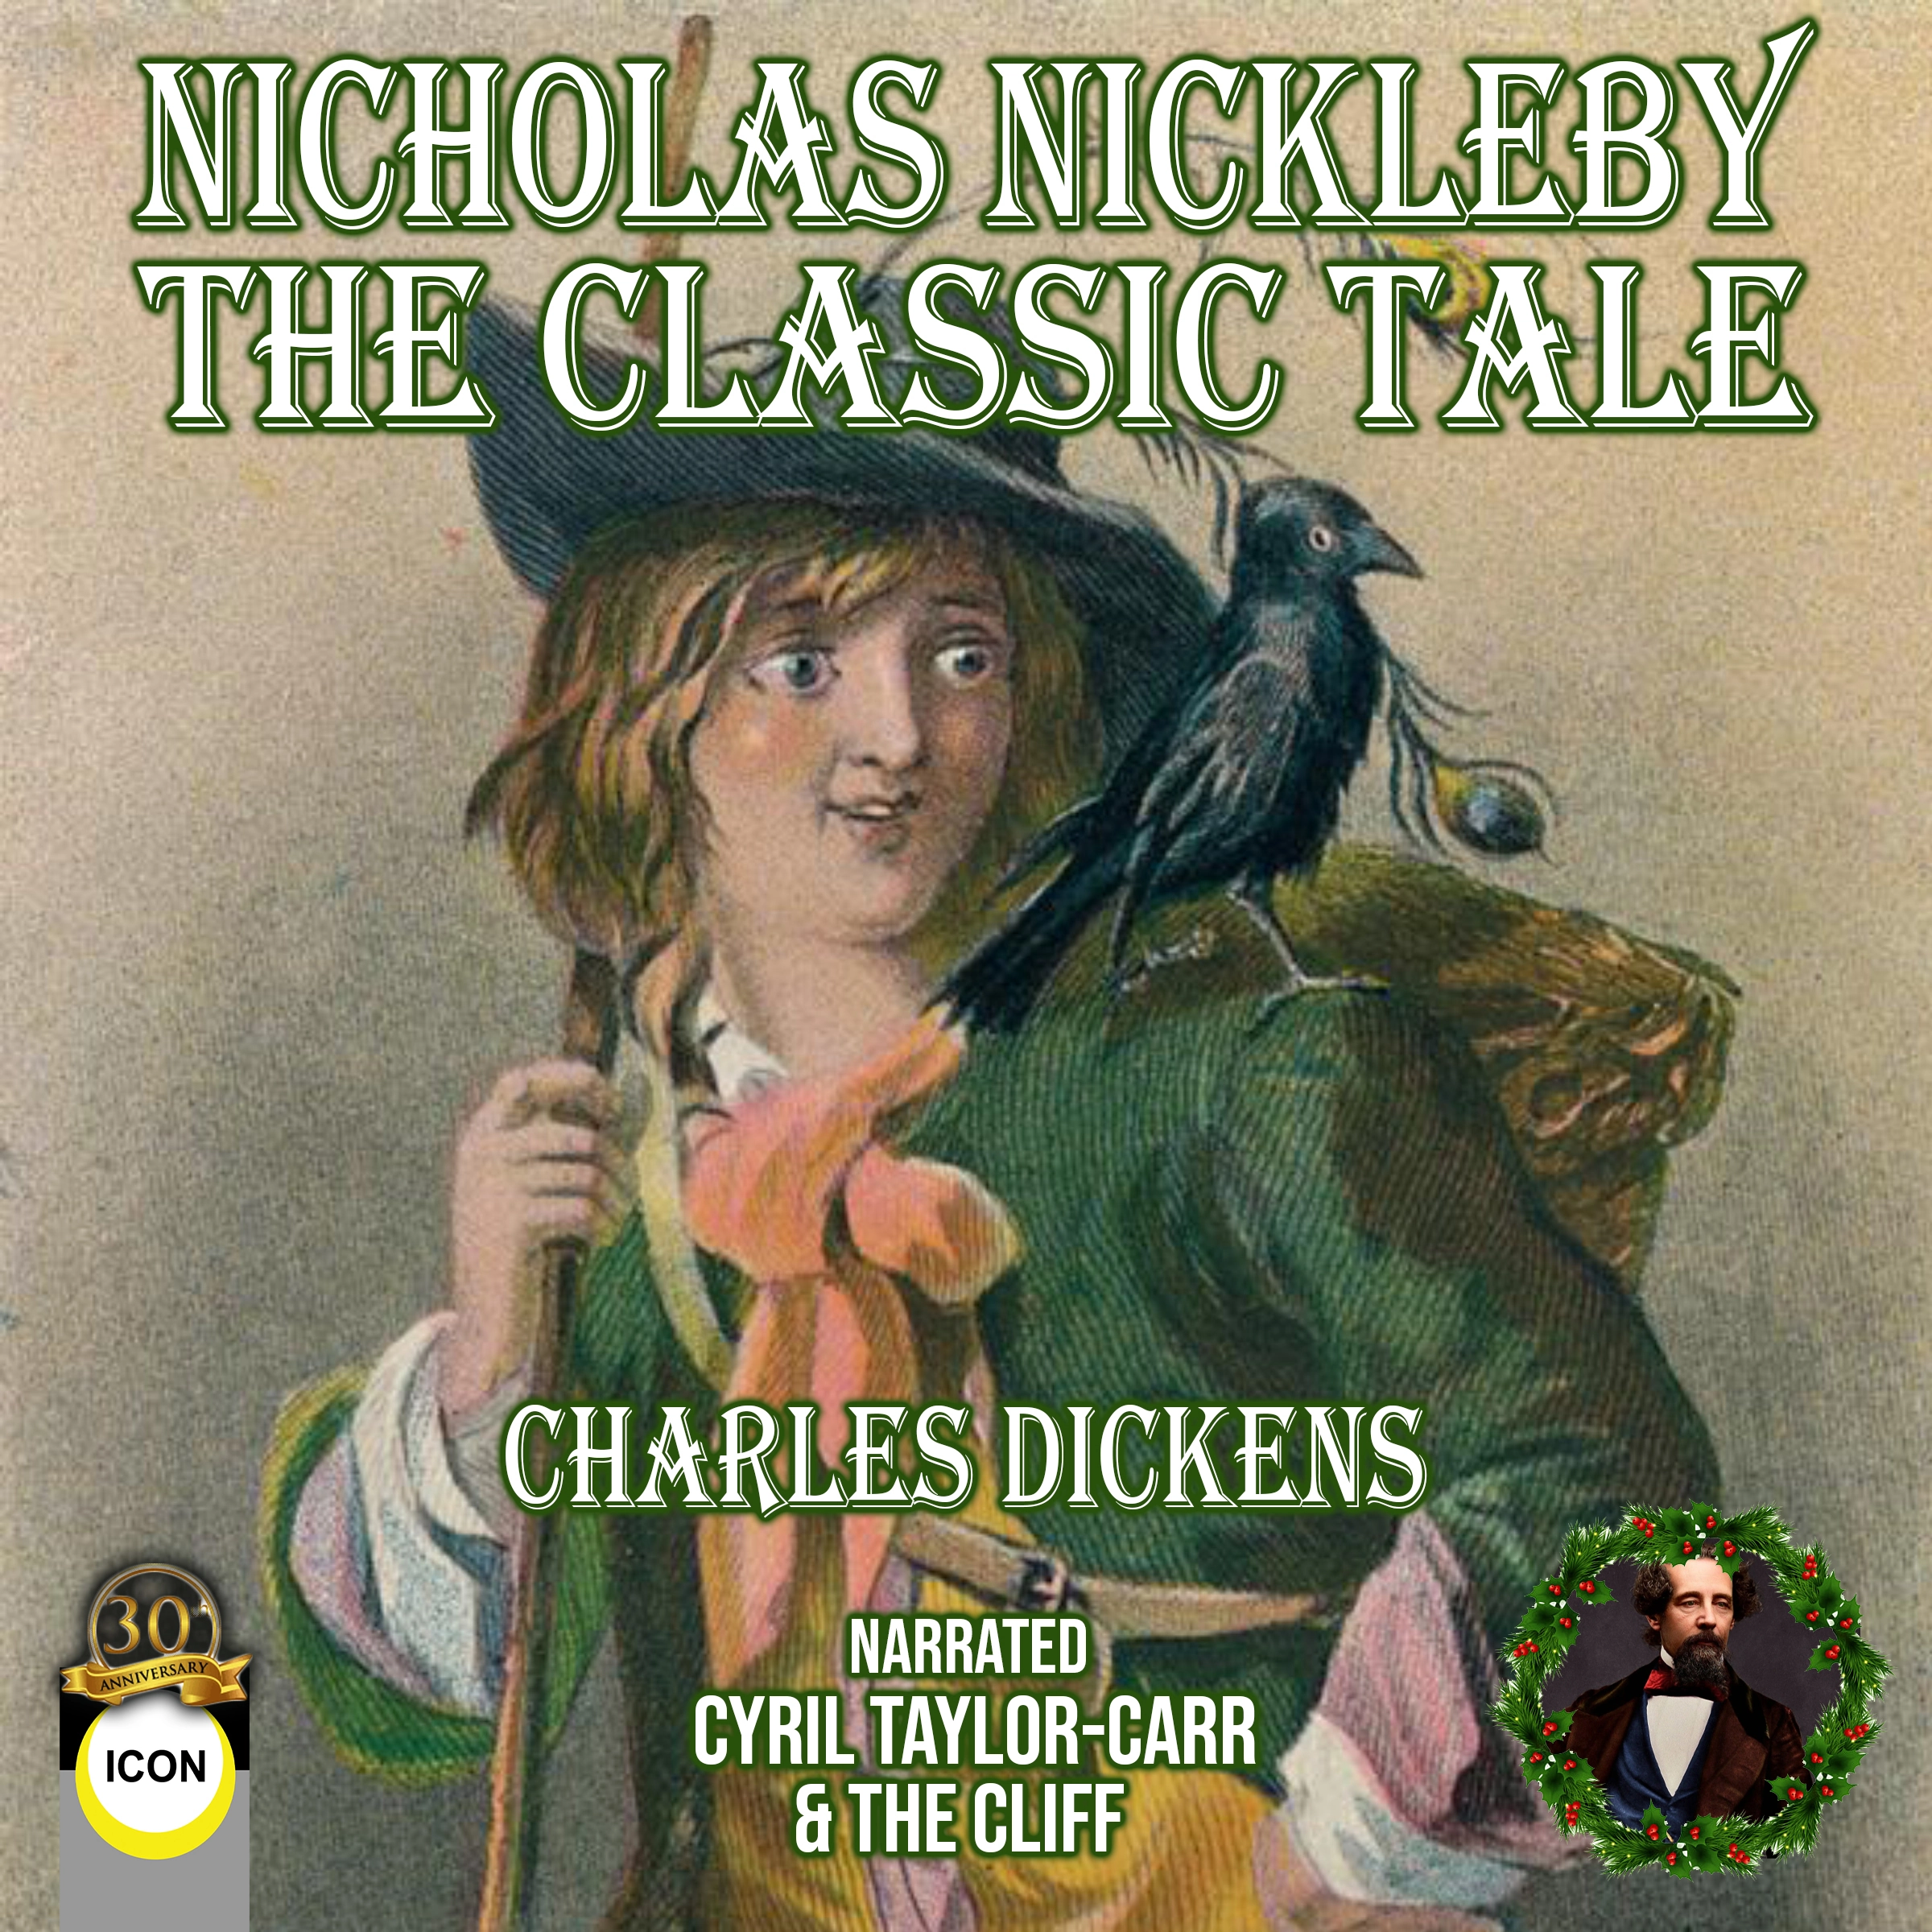 Nicholas Nickleby by Charles Dickens Audiobook